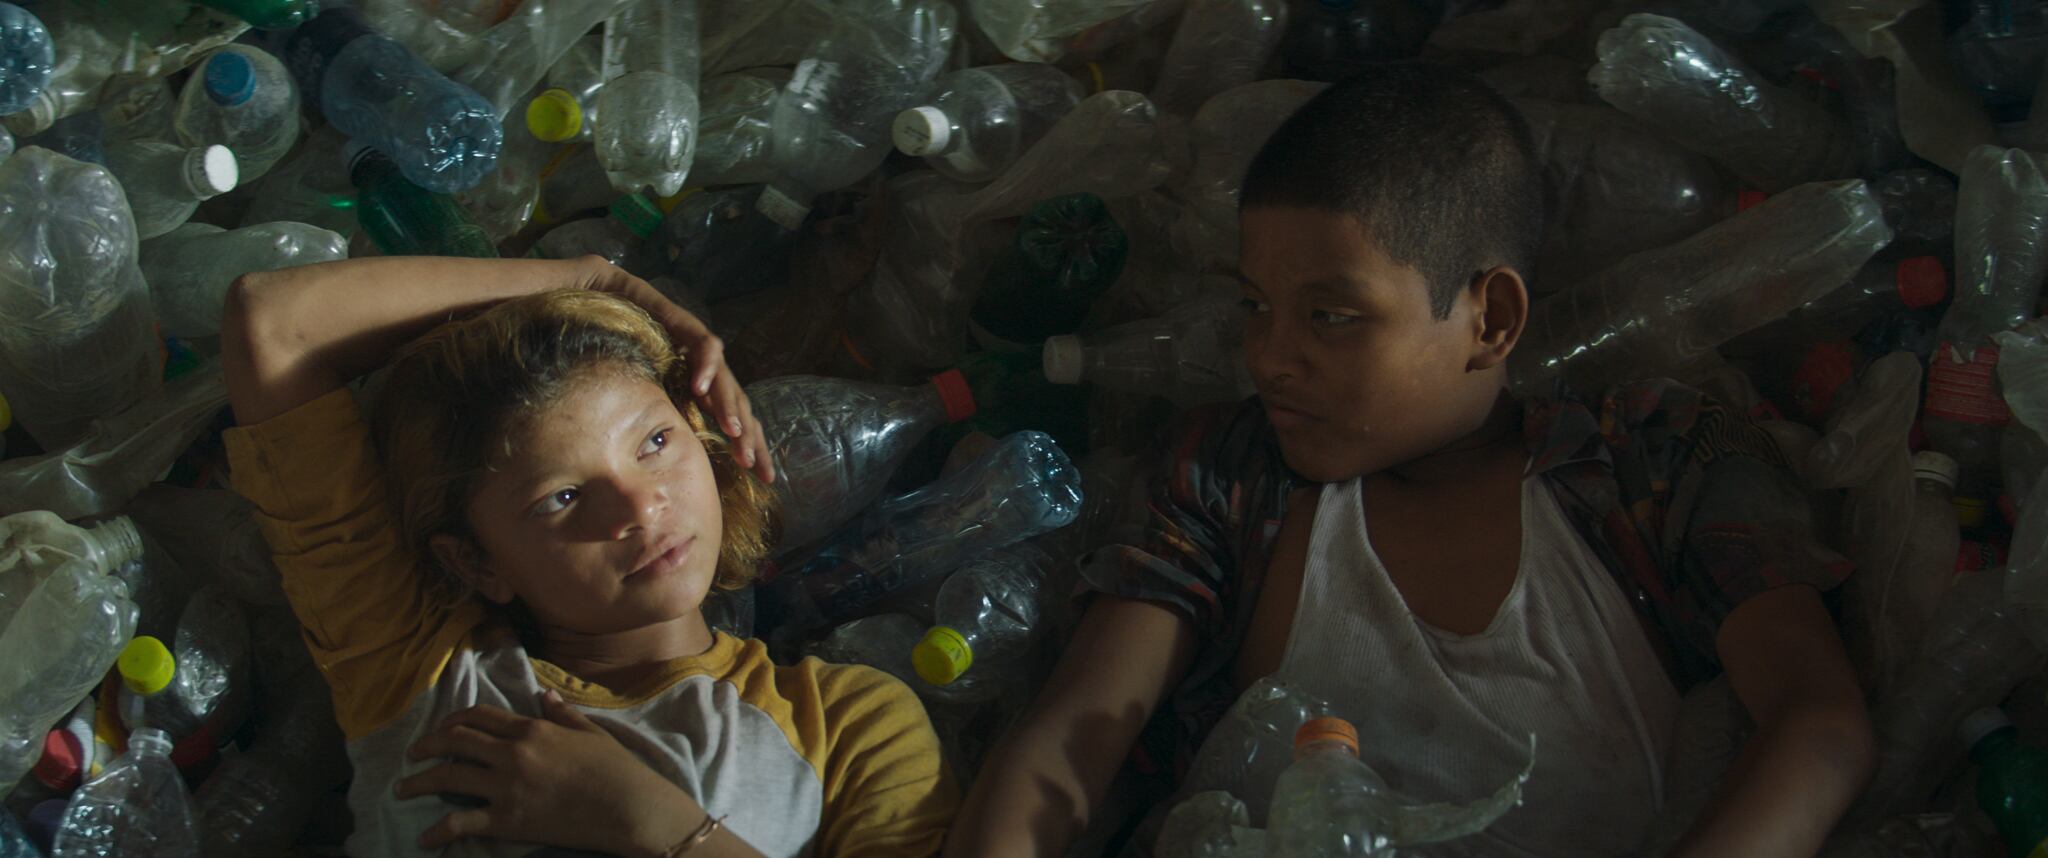 María recostada sobre basura, en un fotograma de la película 'La hija de todas las rabias' (2021).